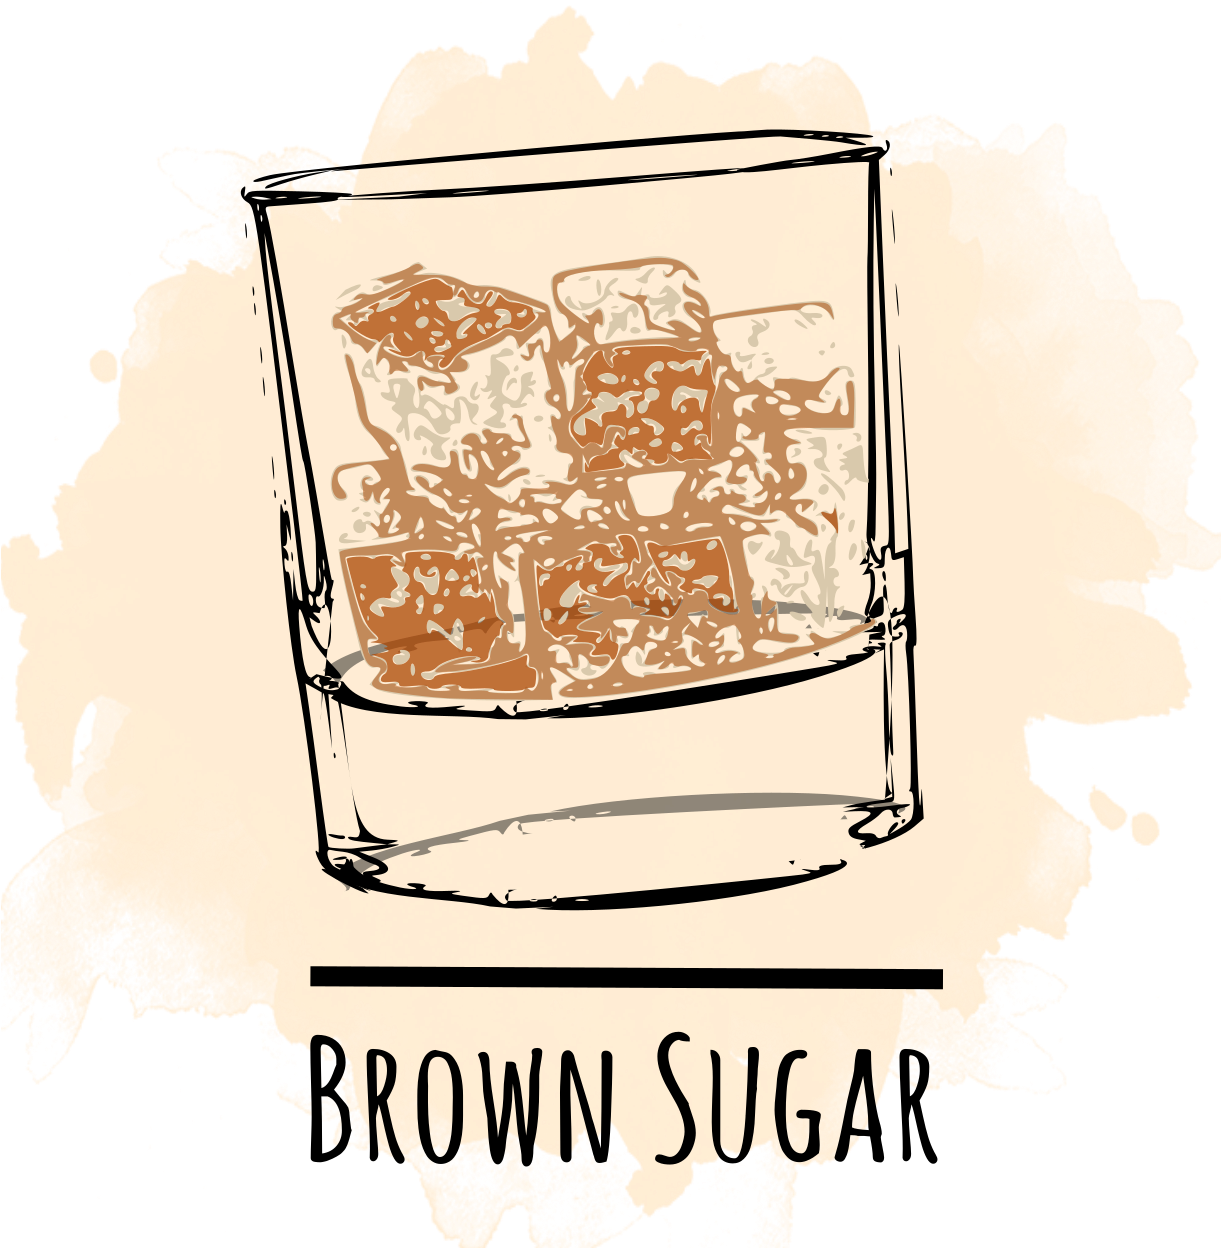 Logo gula merah PNG Gambar berkualitas tinggi